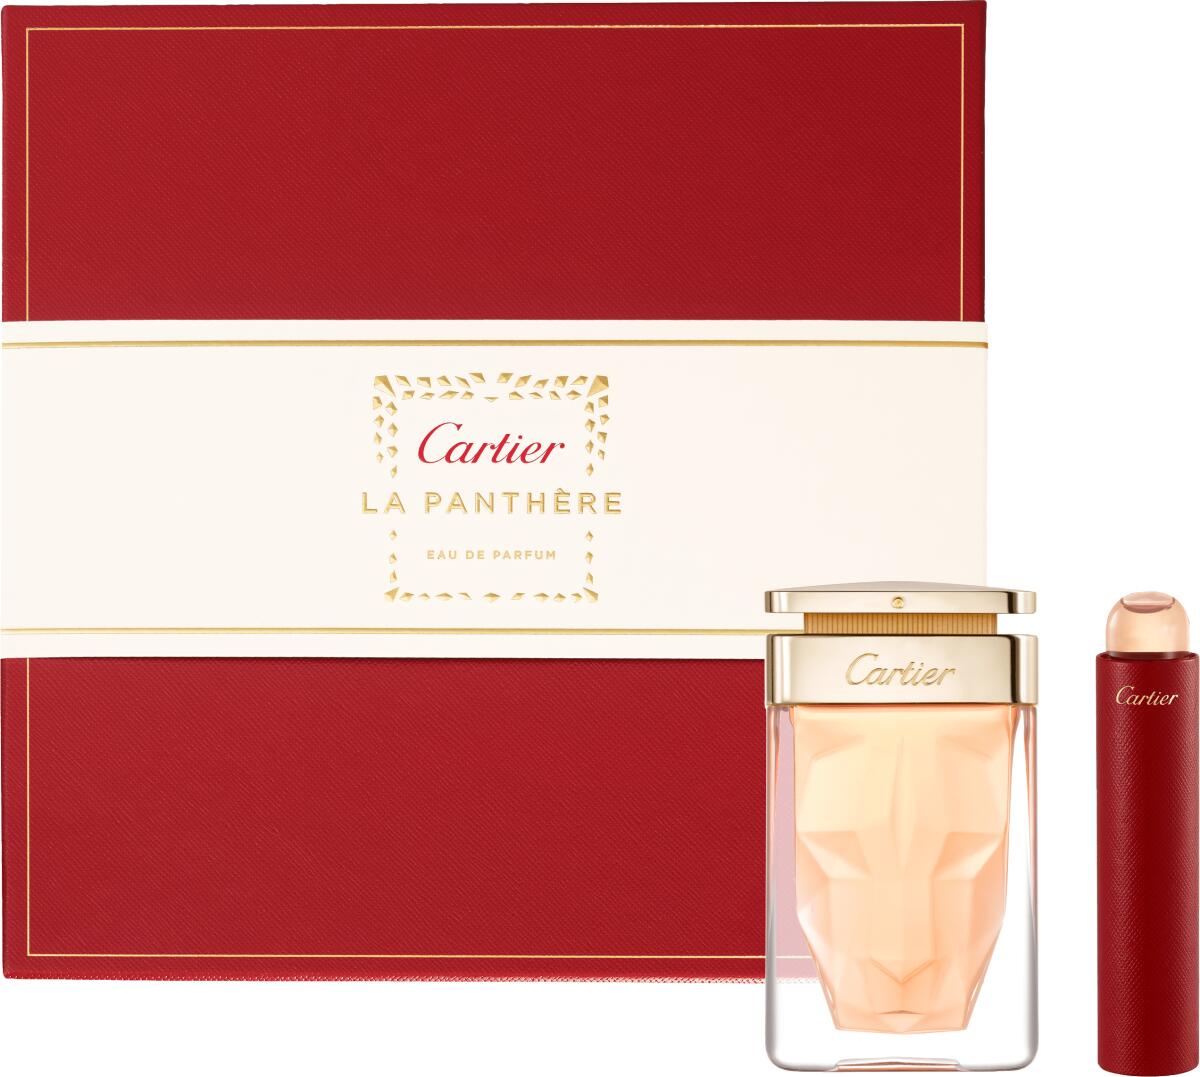 A La Panthère eau de Parfum holiday set.